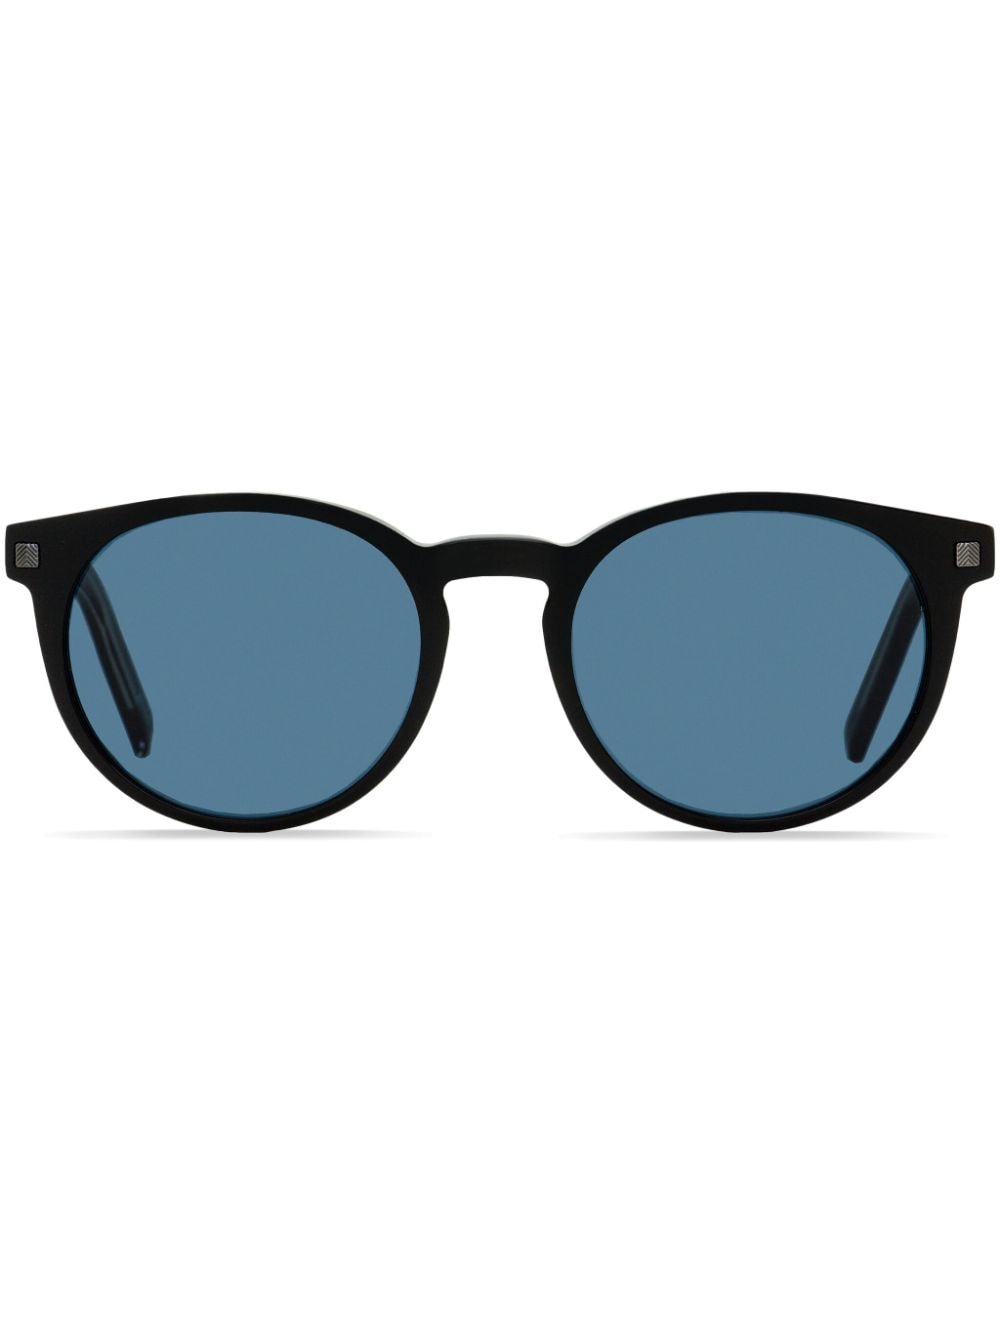 Pantos oval-frame sunglasses